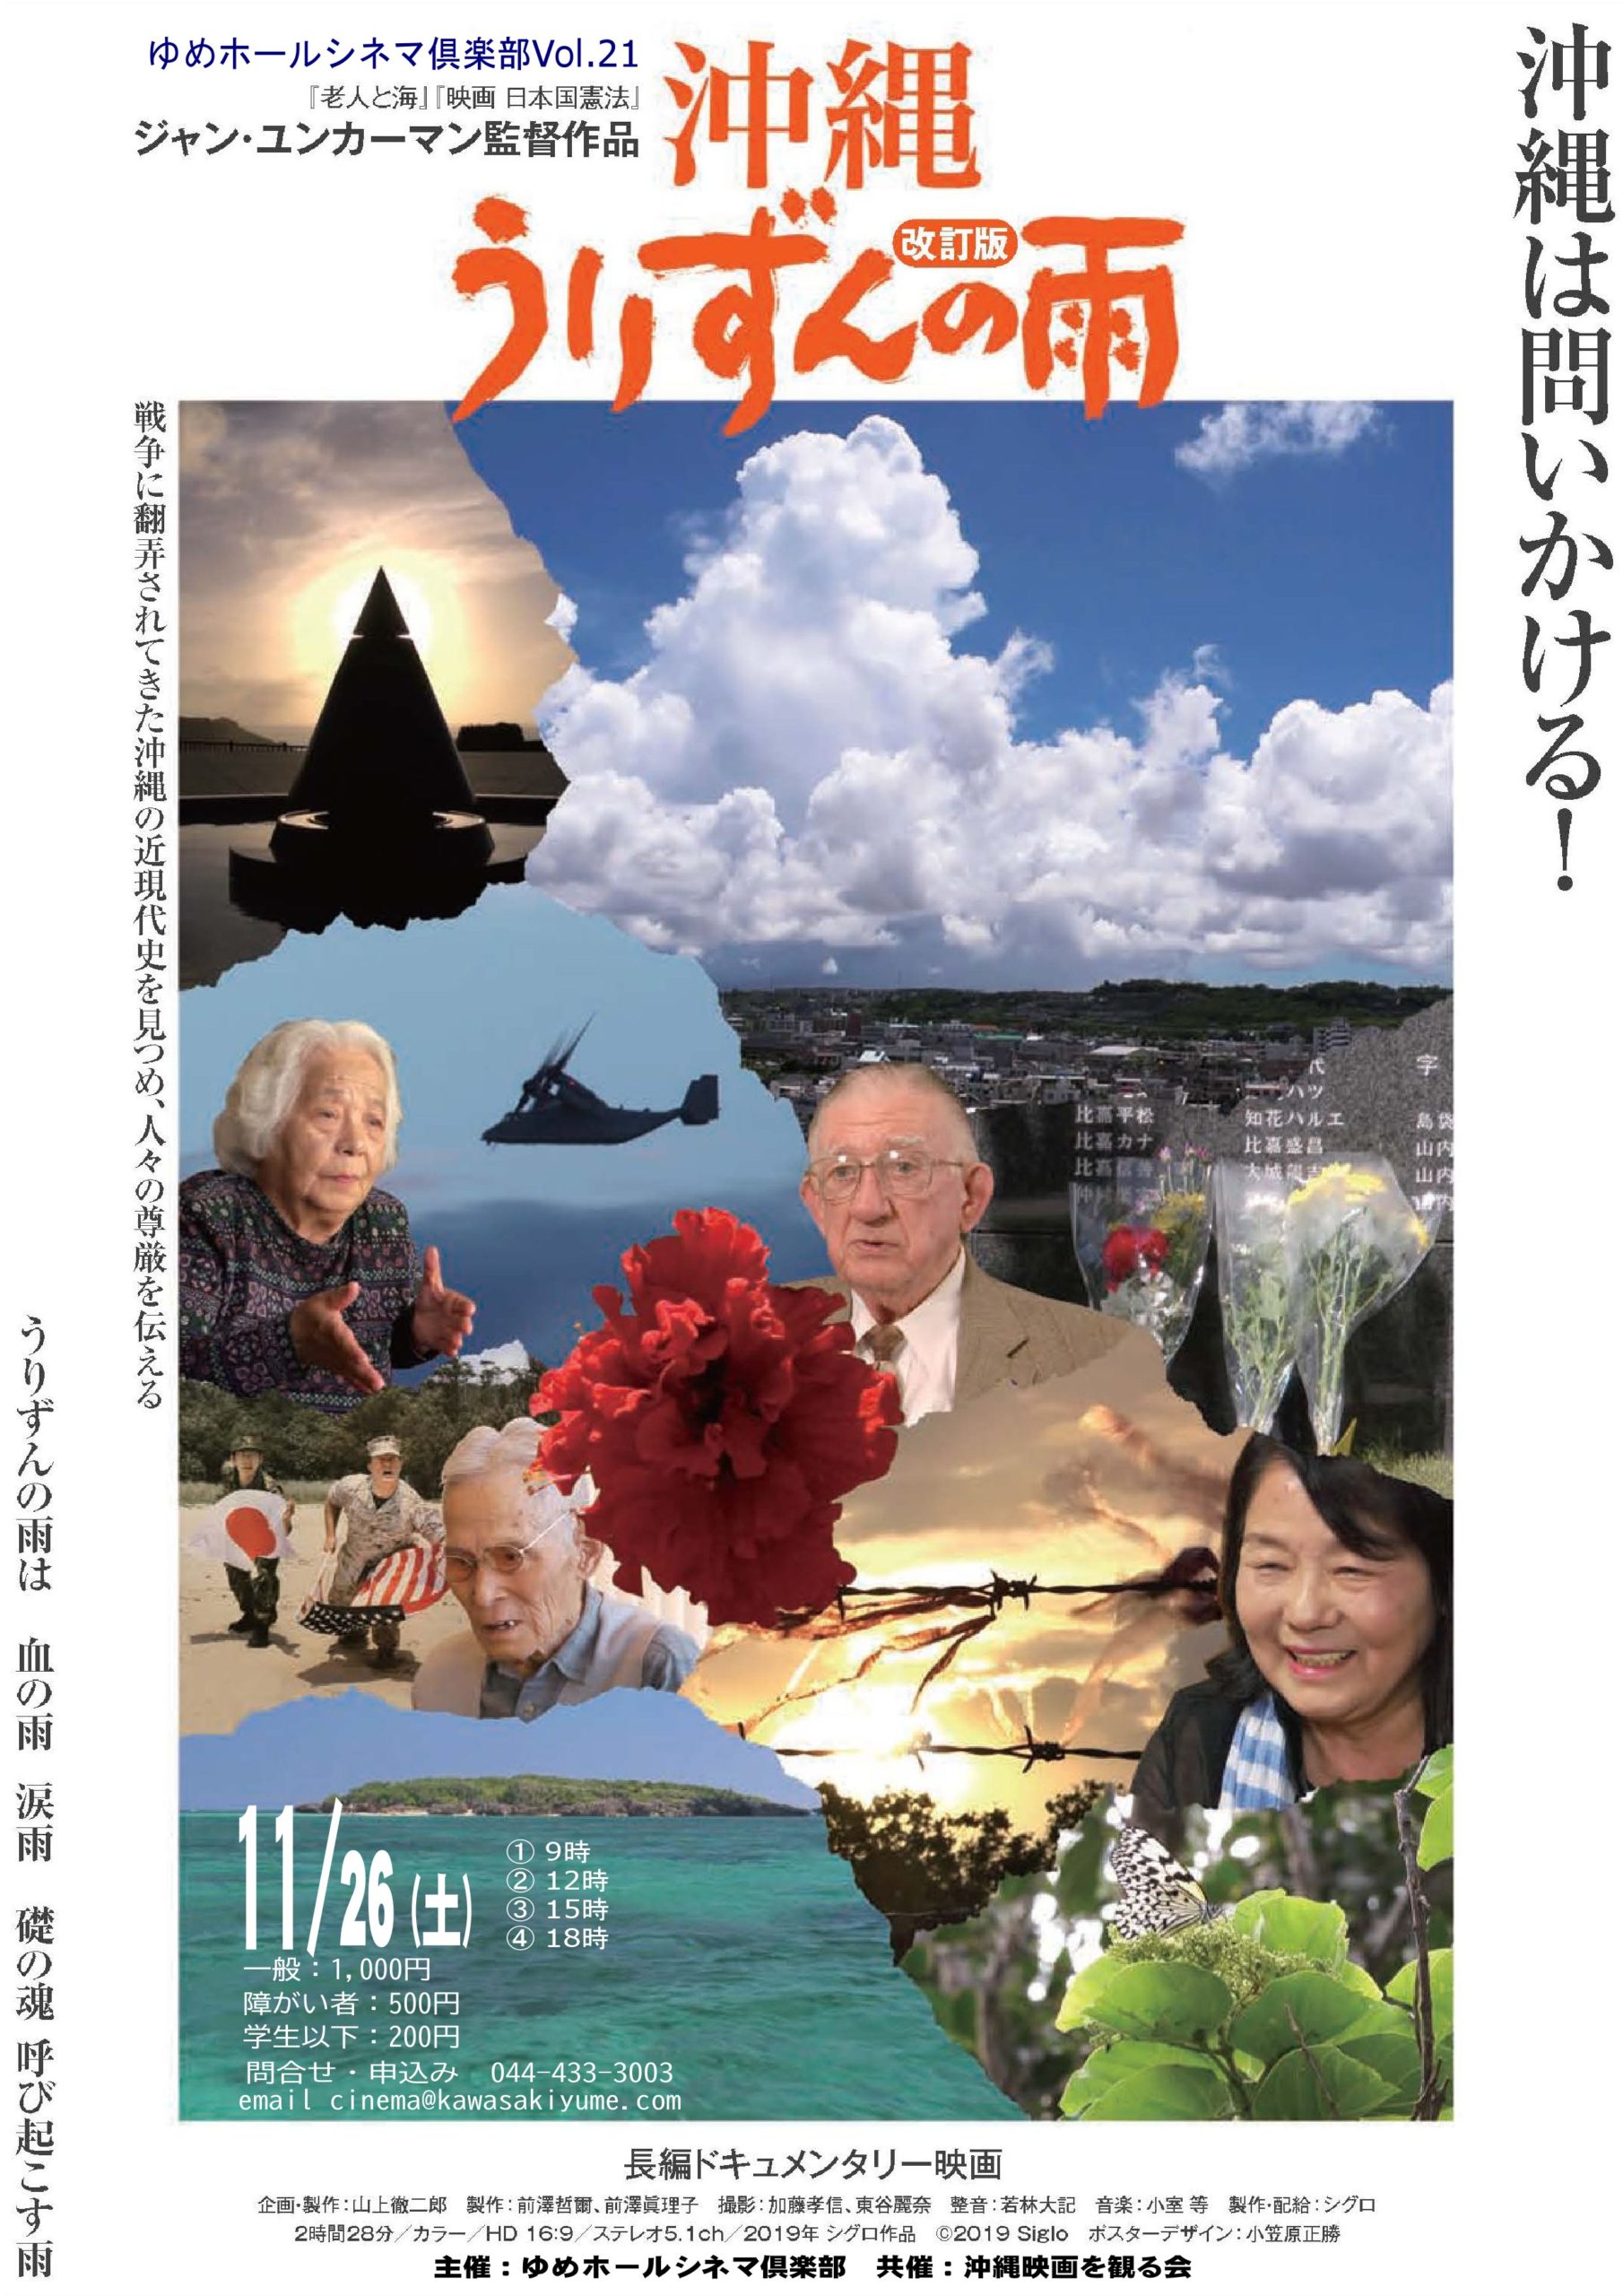 映画「沖縄・うりずんの雨」